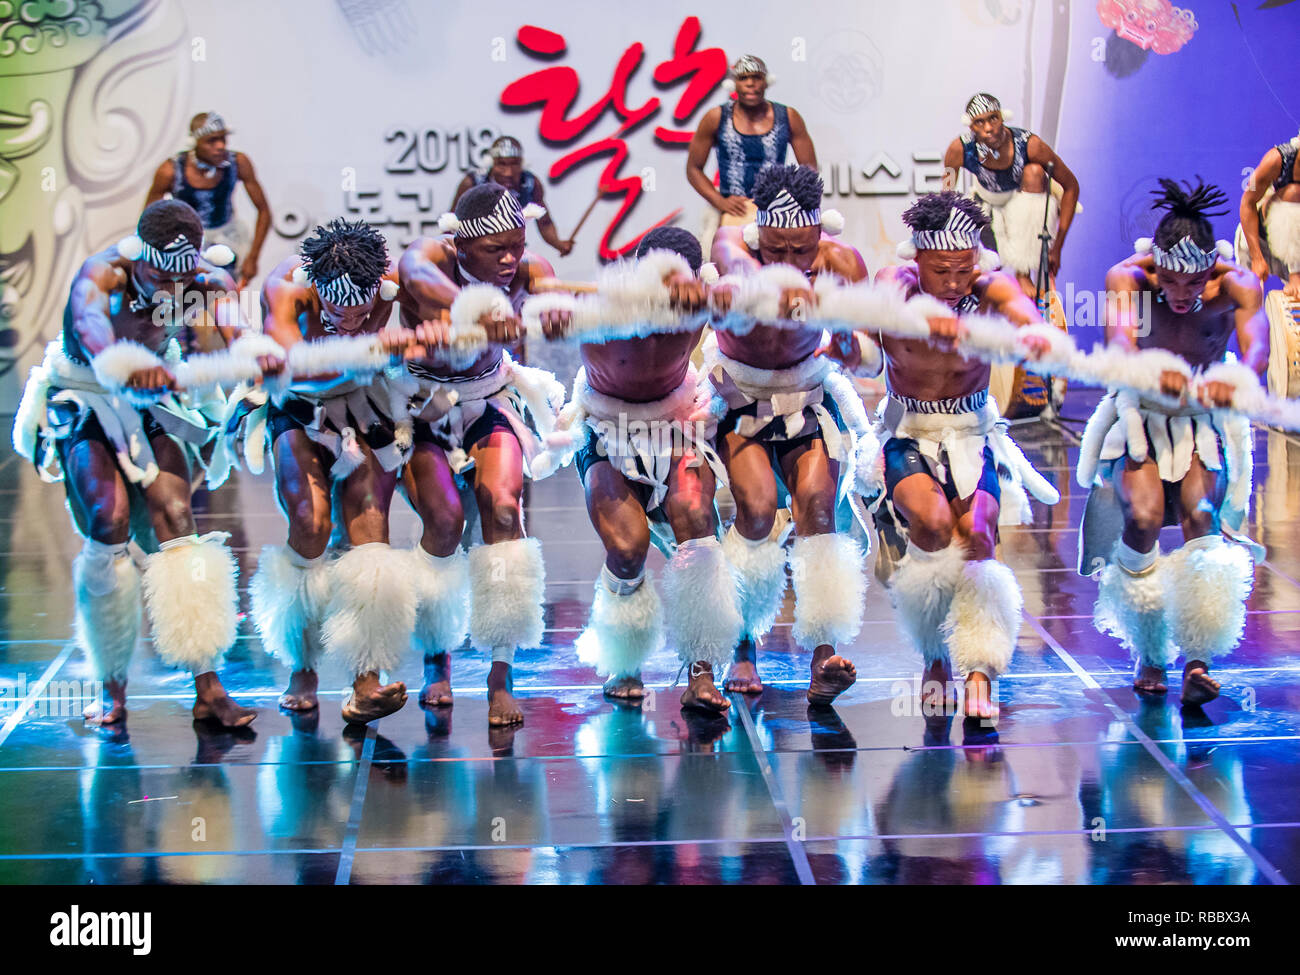 Des danseurs sud-africains d'Amazebra folklore Dance ensemble se produisent au festival de la danse maskdance qui s'est tenu à Andong, en Corée du Sud Banque D'Images